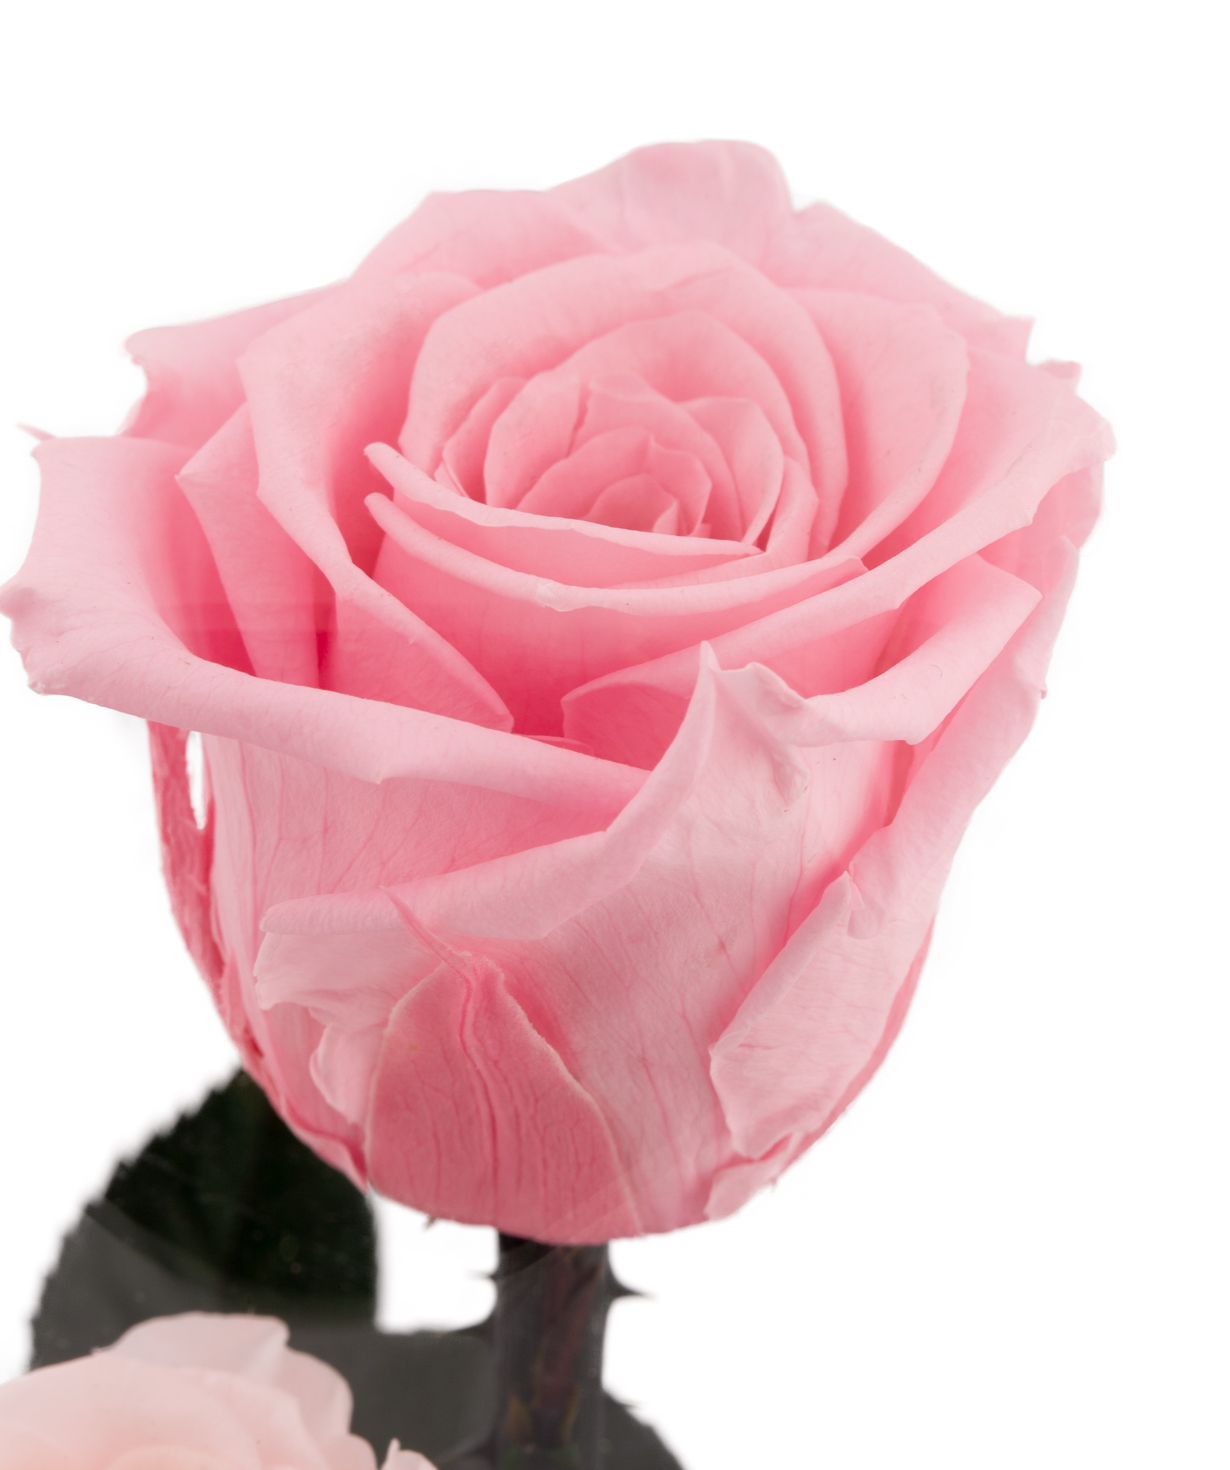 Վարդեր «EM Flowers» հավերժական վարդագույն 28 սմ կոլբայով